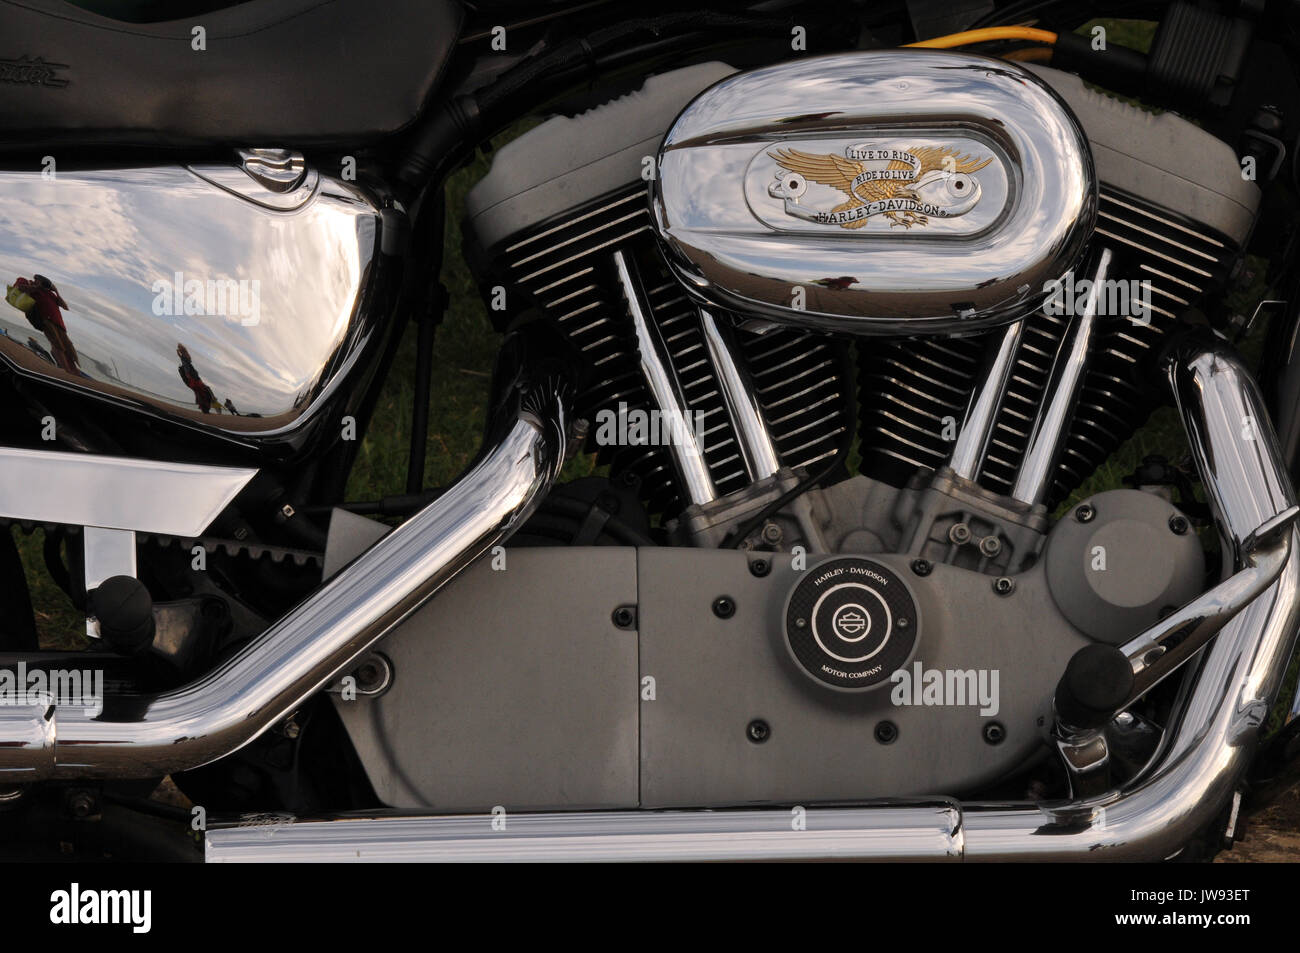 Eine Nahaufnahme Bild eines modernen Motorrad Motor Harley Davidson und  Kawasaki große 750er oder 1200er glänzend Motorradfahren und große Motoren  Stockfotografie - Alamy